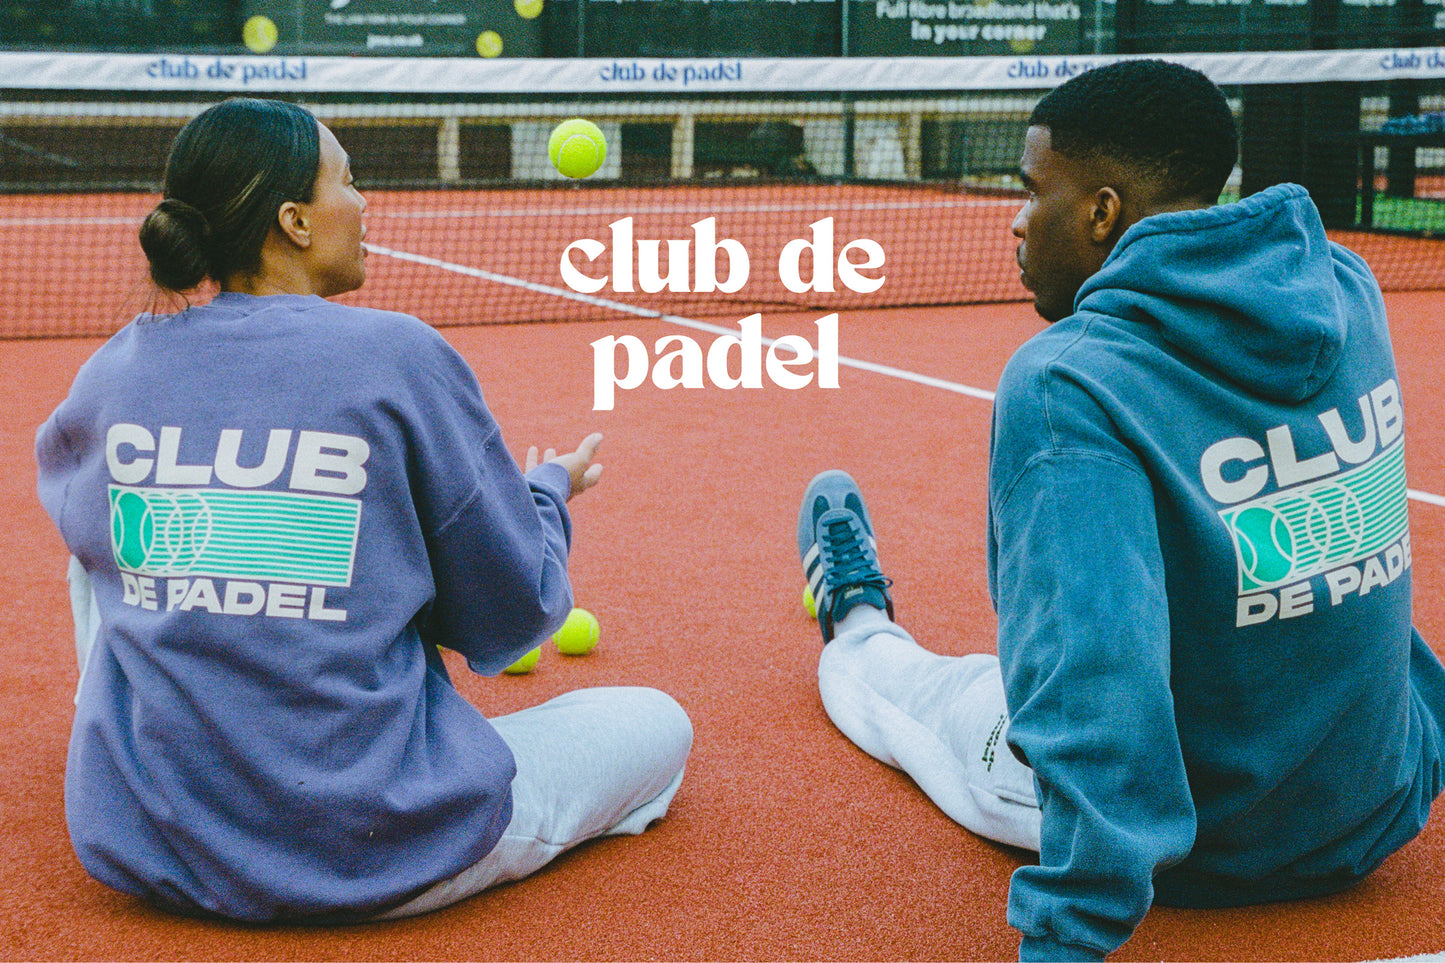 Club de Padel – UN:IK Clothing